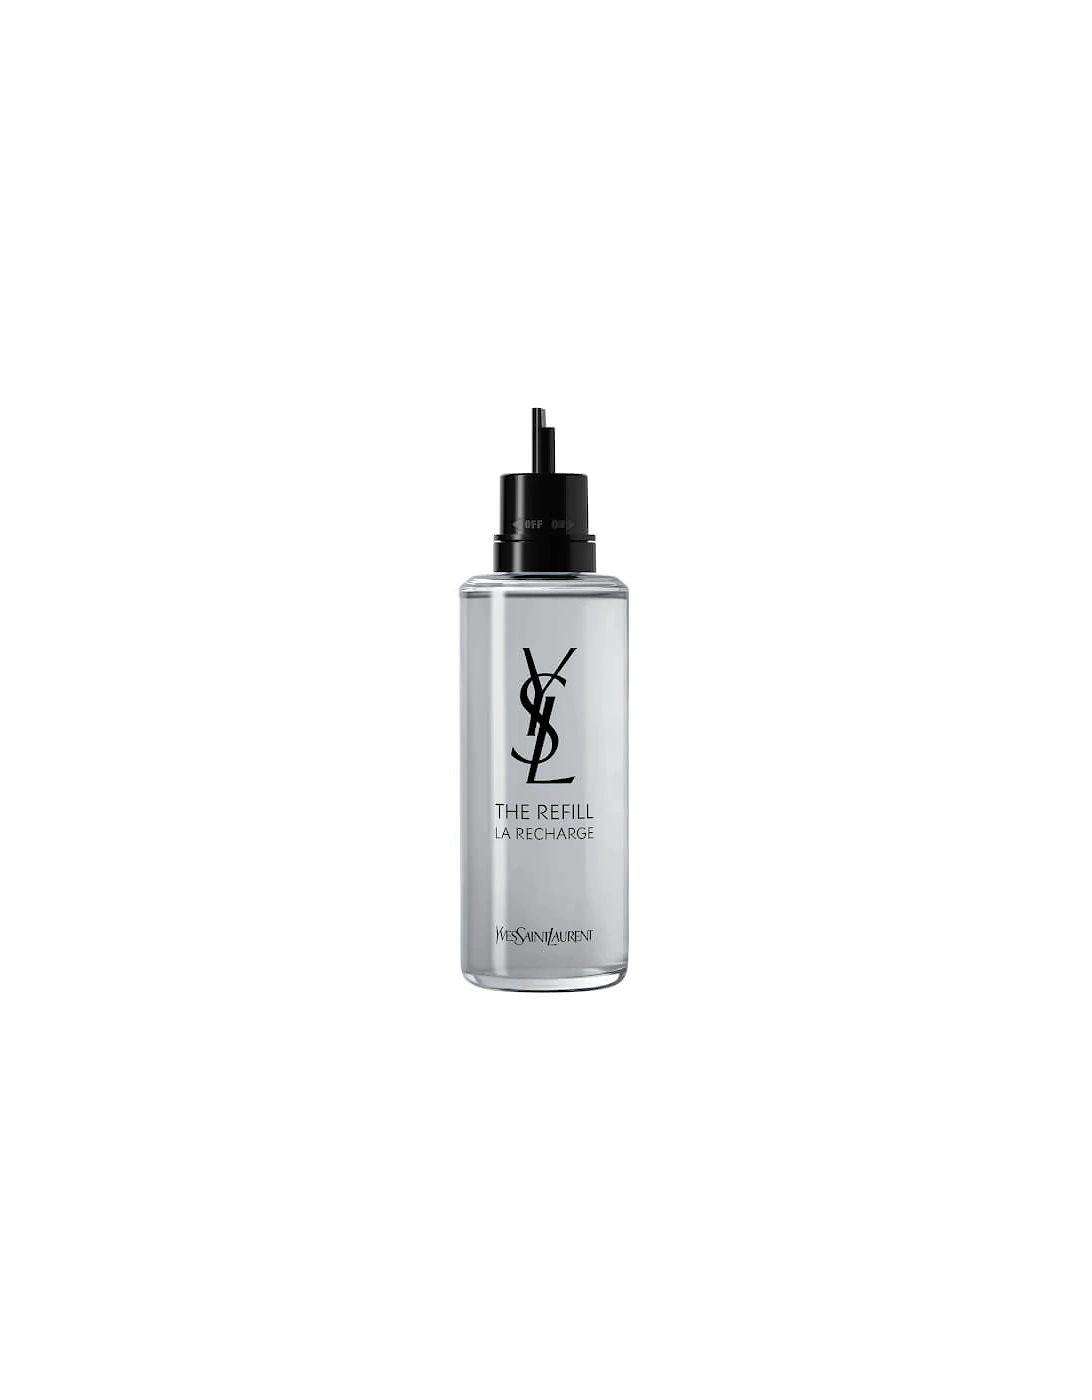 Yves Saint Laurent MYSLF Eau de Parfum Refill 150ml, 2 of 1